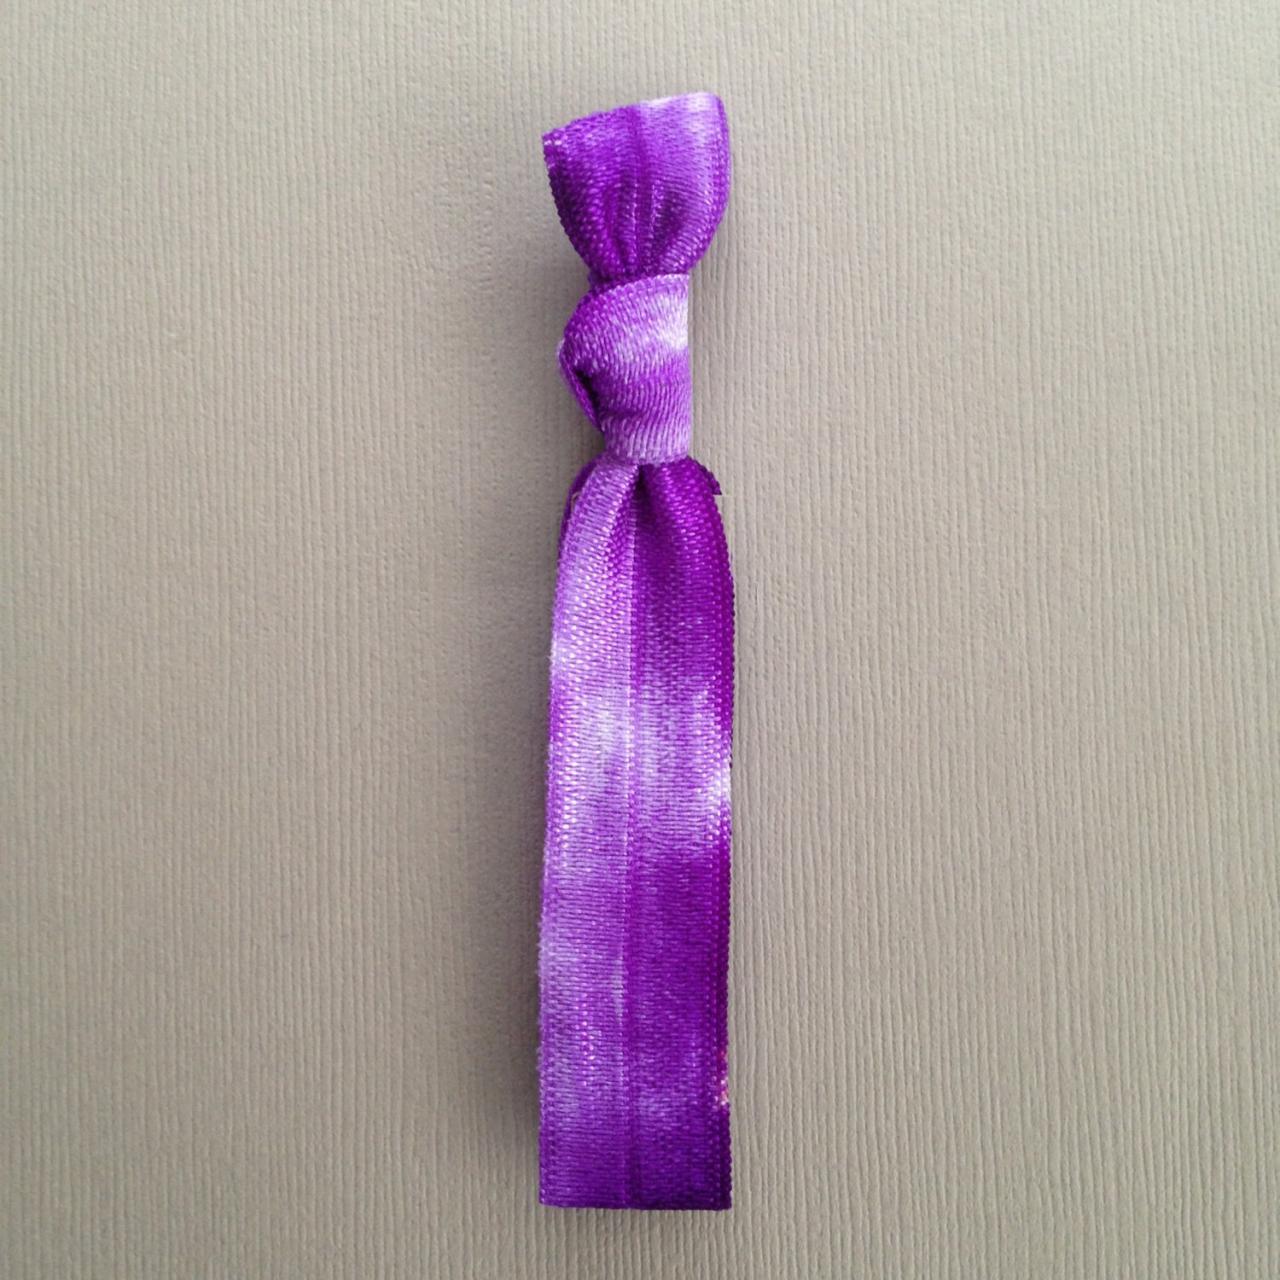 1 Violet Tie Dye Hair Tie by Elastic Hair Bandz on Etsy